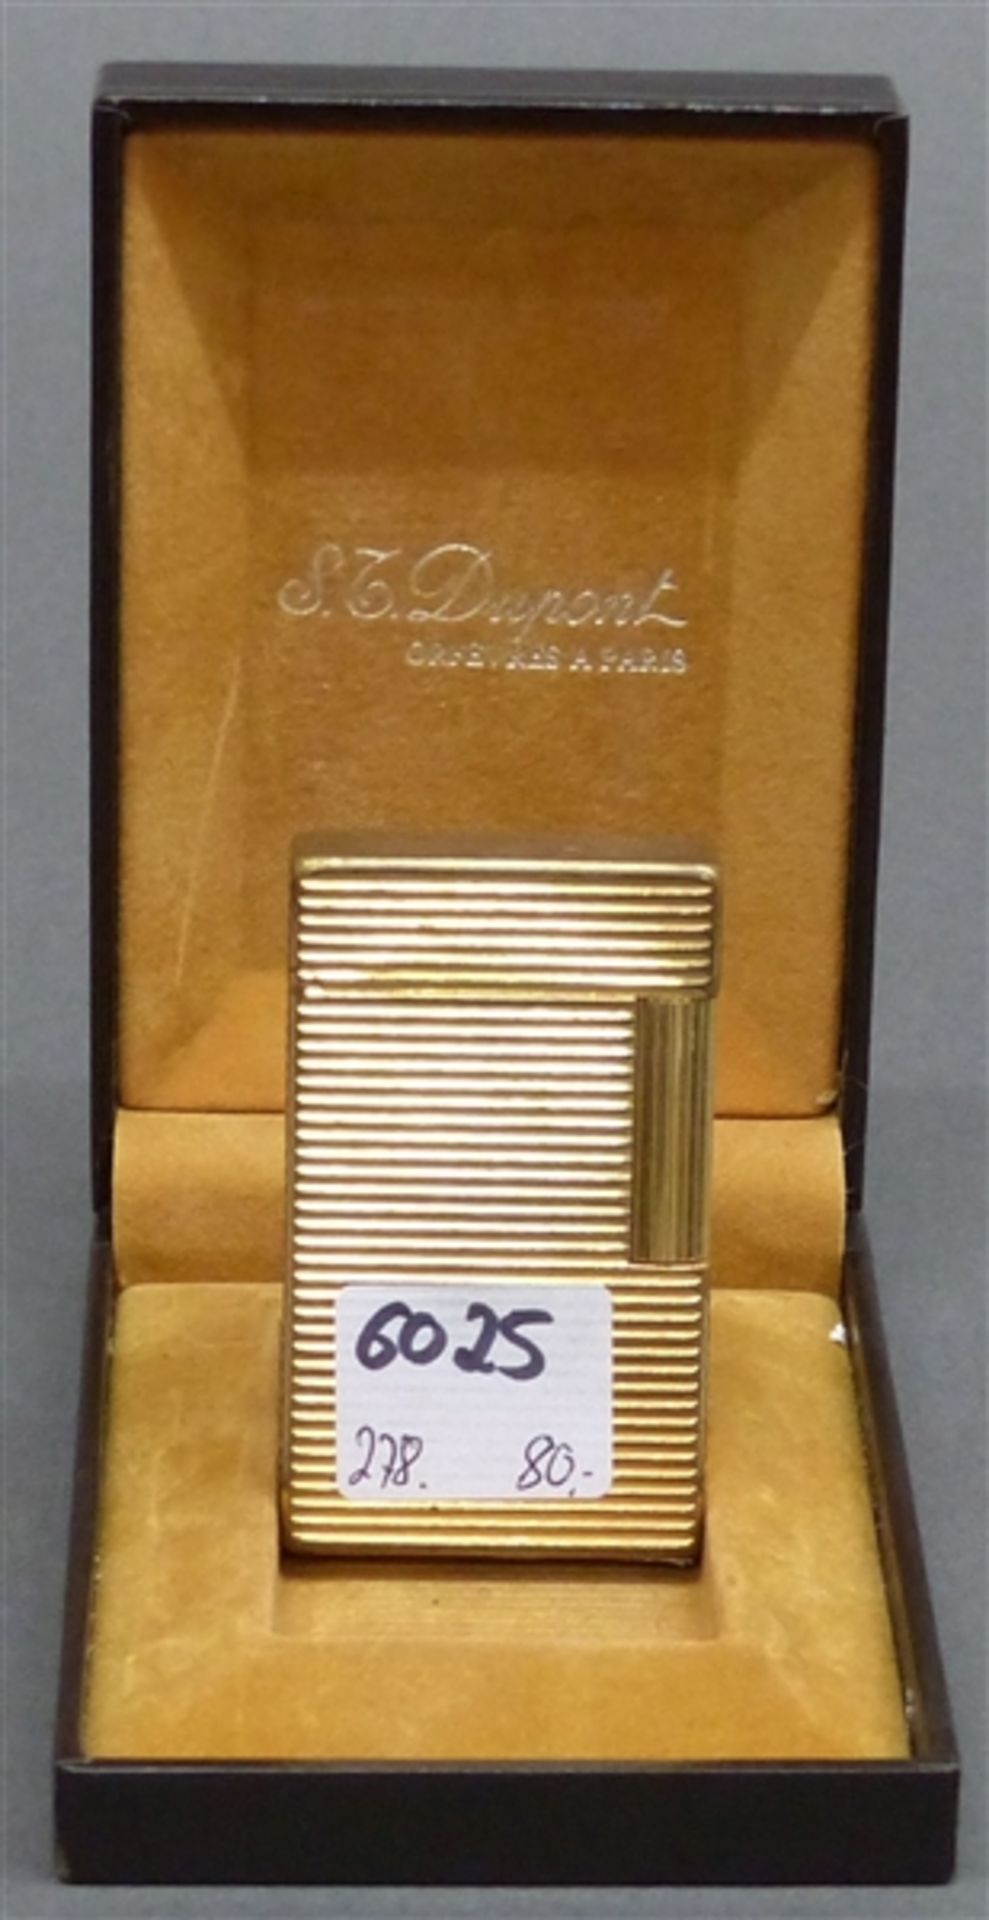 Feuerzeug Metall, vergoldet, St. Dupont Paris, Streifendekor, Gebrauchsspuren, Originaletui, h 5,8